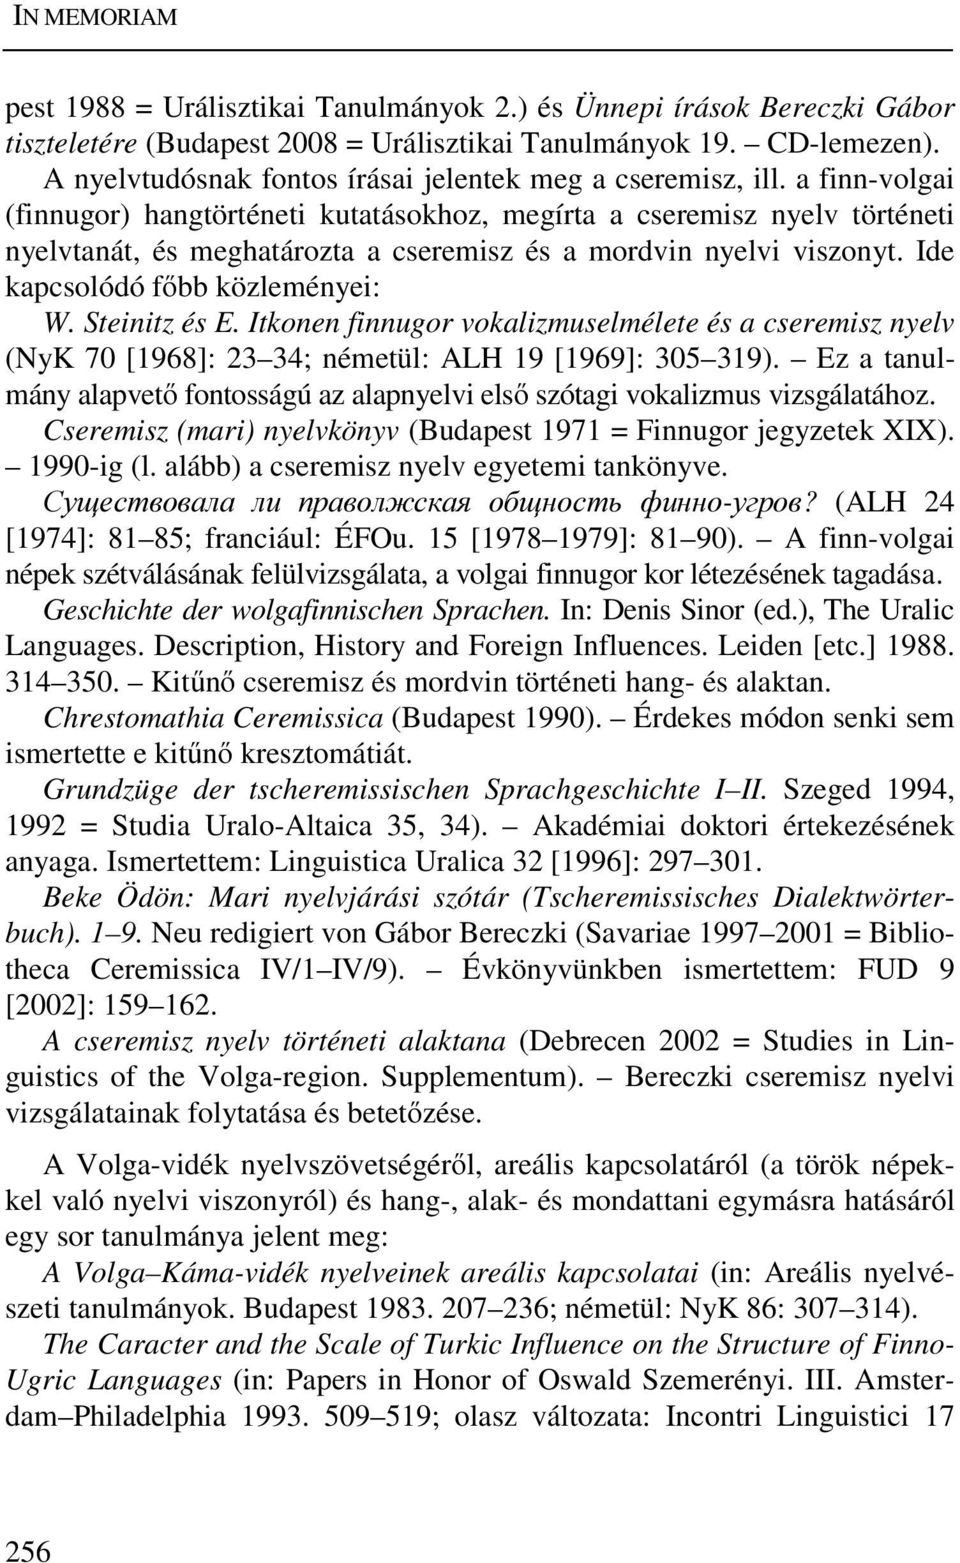 a finn-volgai (finnugor) hangtörténeti kutatásokhoz, megírta a cseremisz nyelv történeti nyelvtanát, és meghatározta a cseremisz és a mordvin nyelvi viszonyt. Ide kapcsolódó főbb közleményei: W.